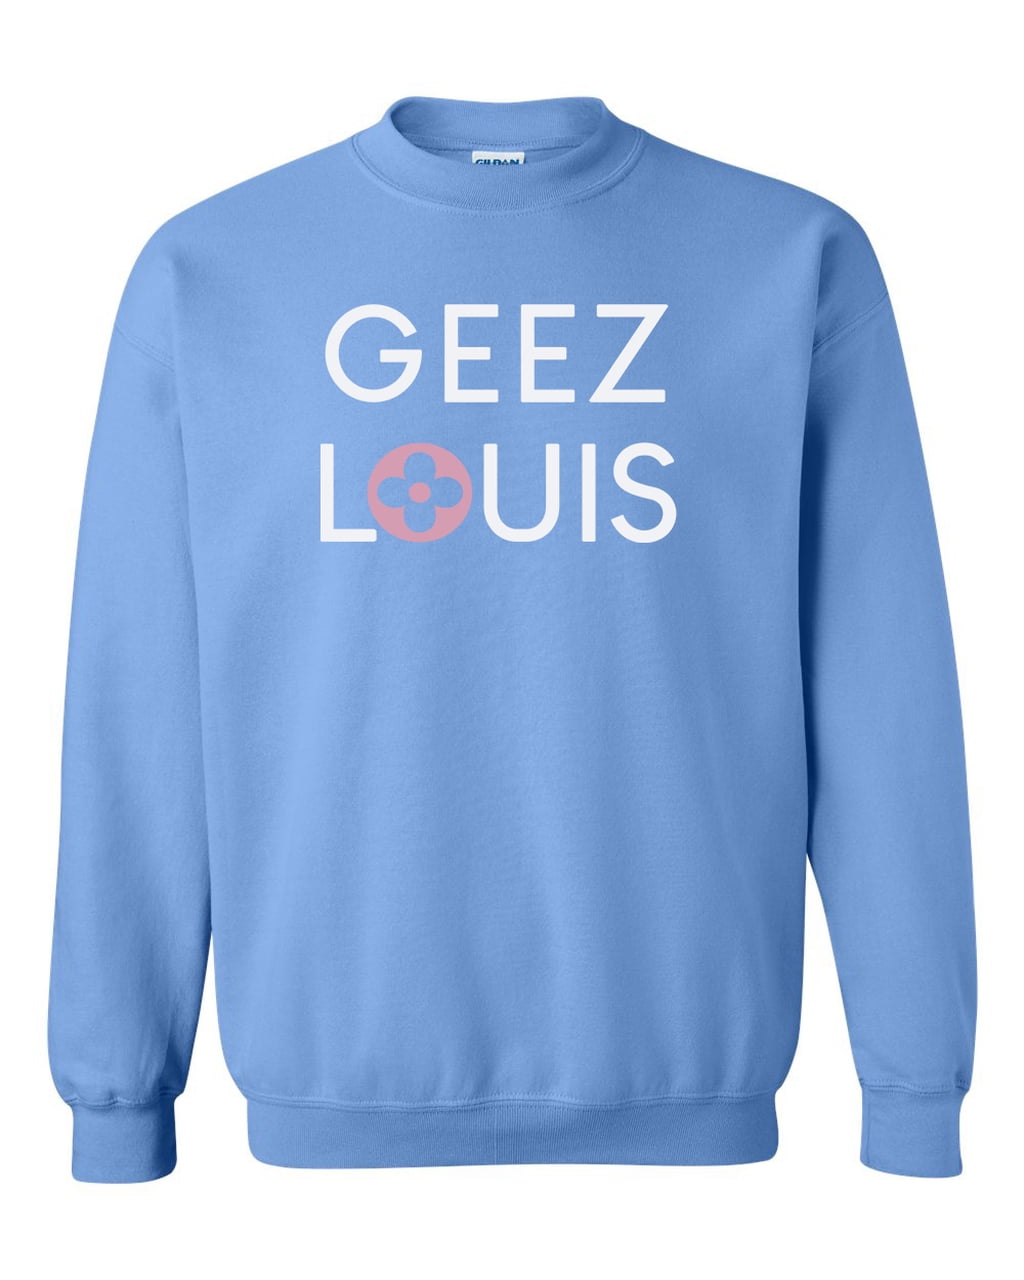 Geez Sweatshirt Chocolate Brown Designer Pullover Shirt Unisex Crewneck Sweatshirt Geez Louis Sweatshirt Geez Louis